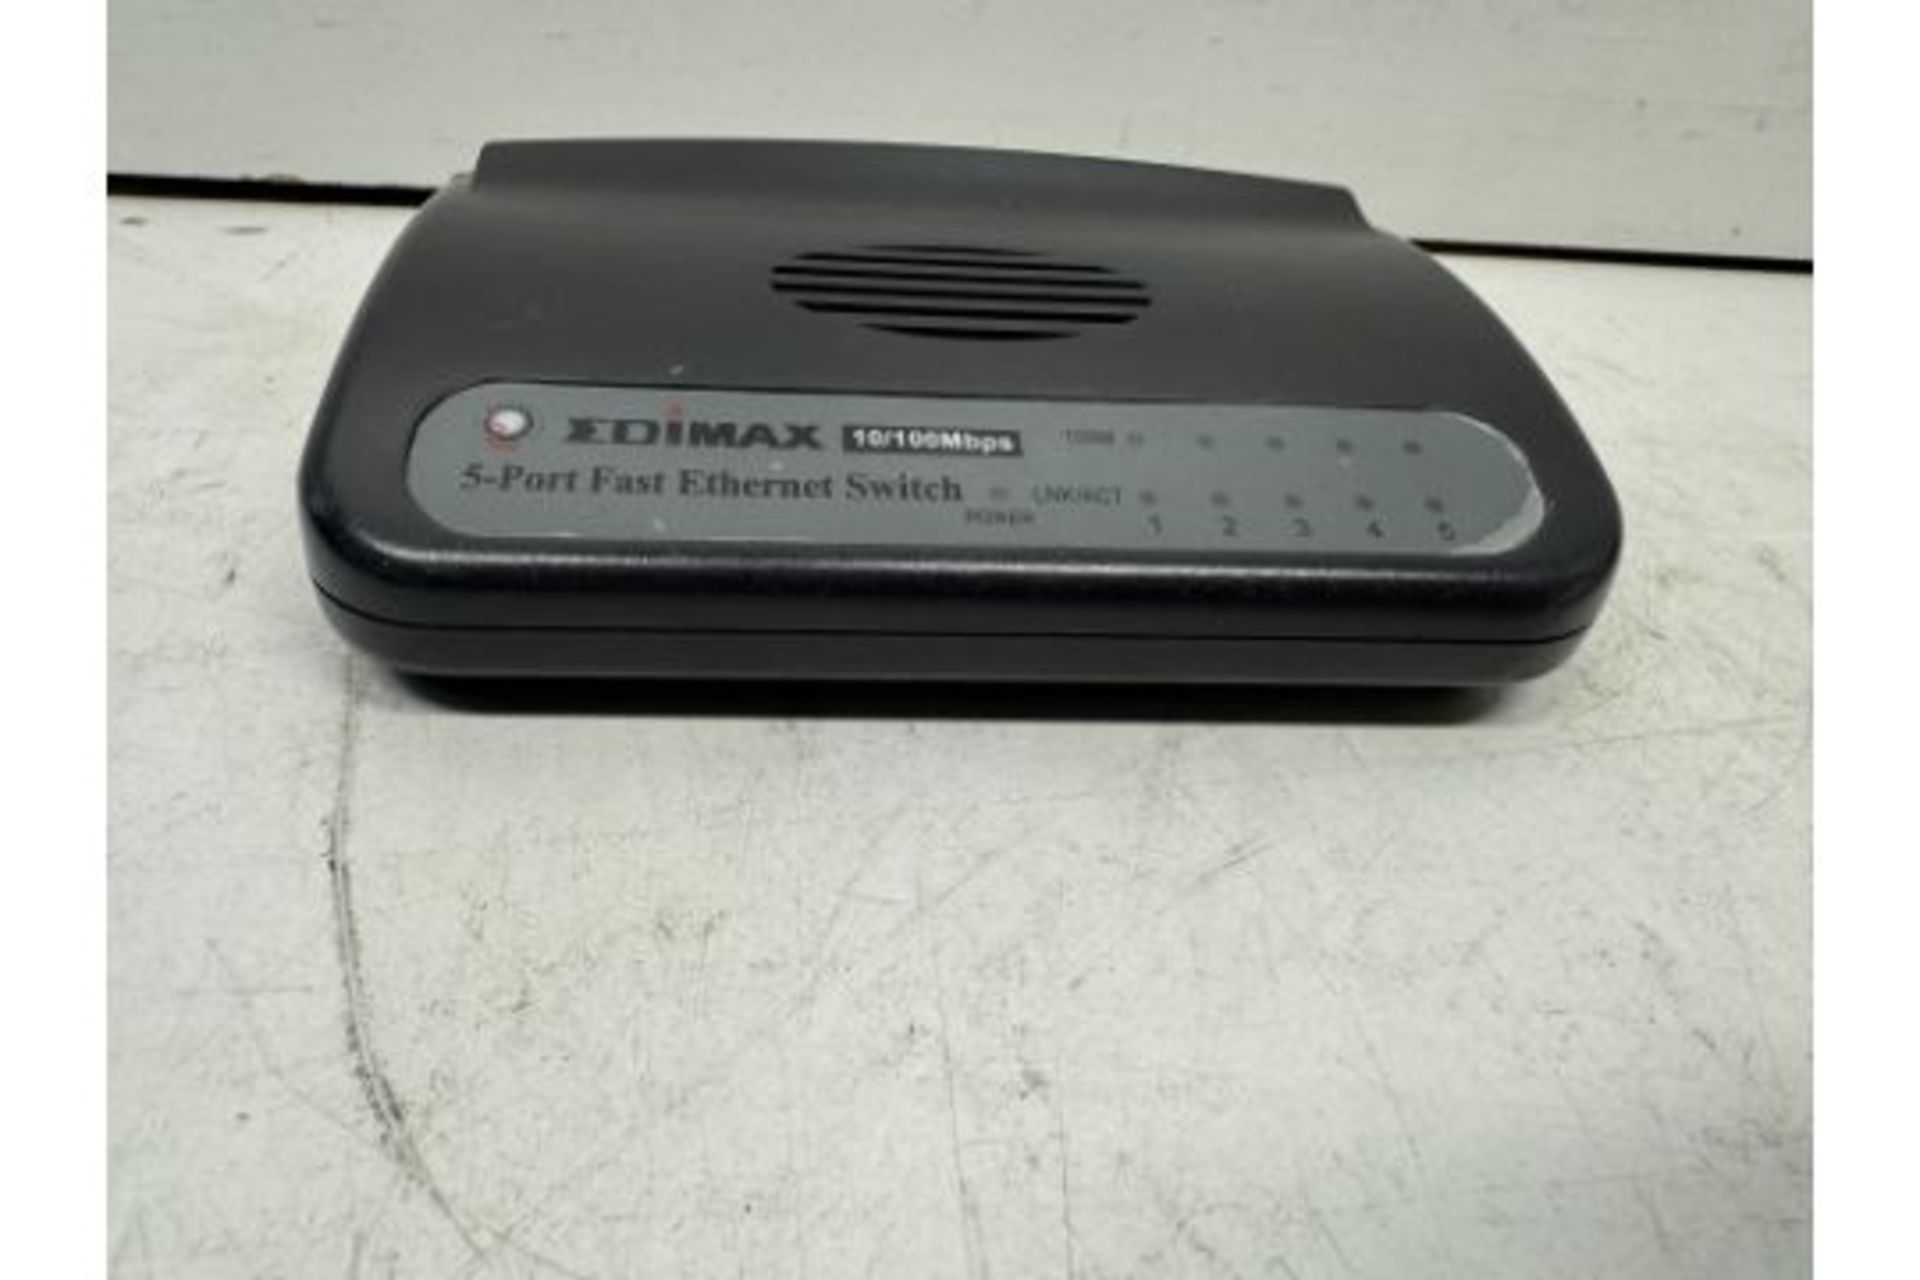 Edimax 5-Port Fast Ethernet Desktop Switch - Image 2 of 4